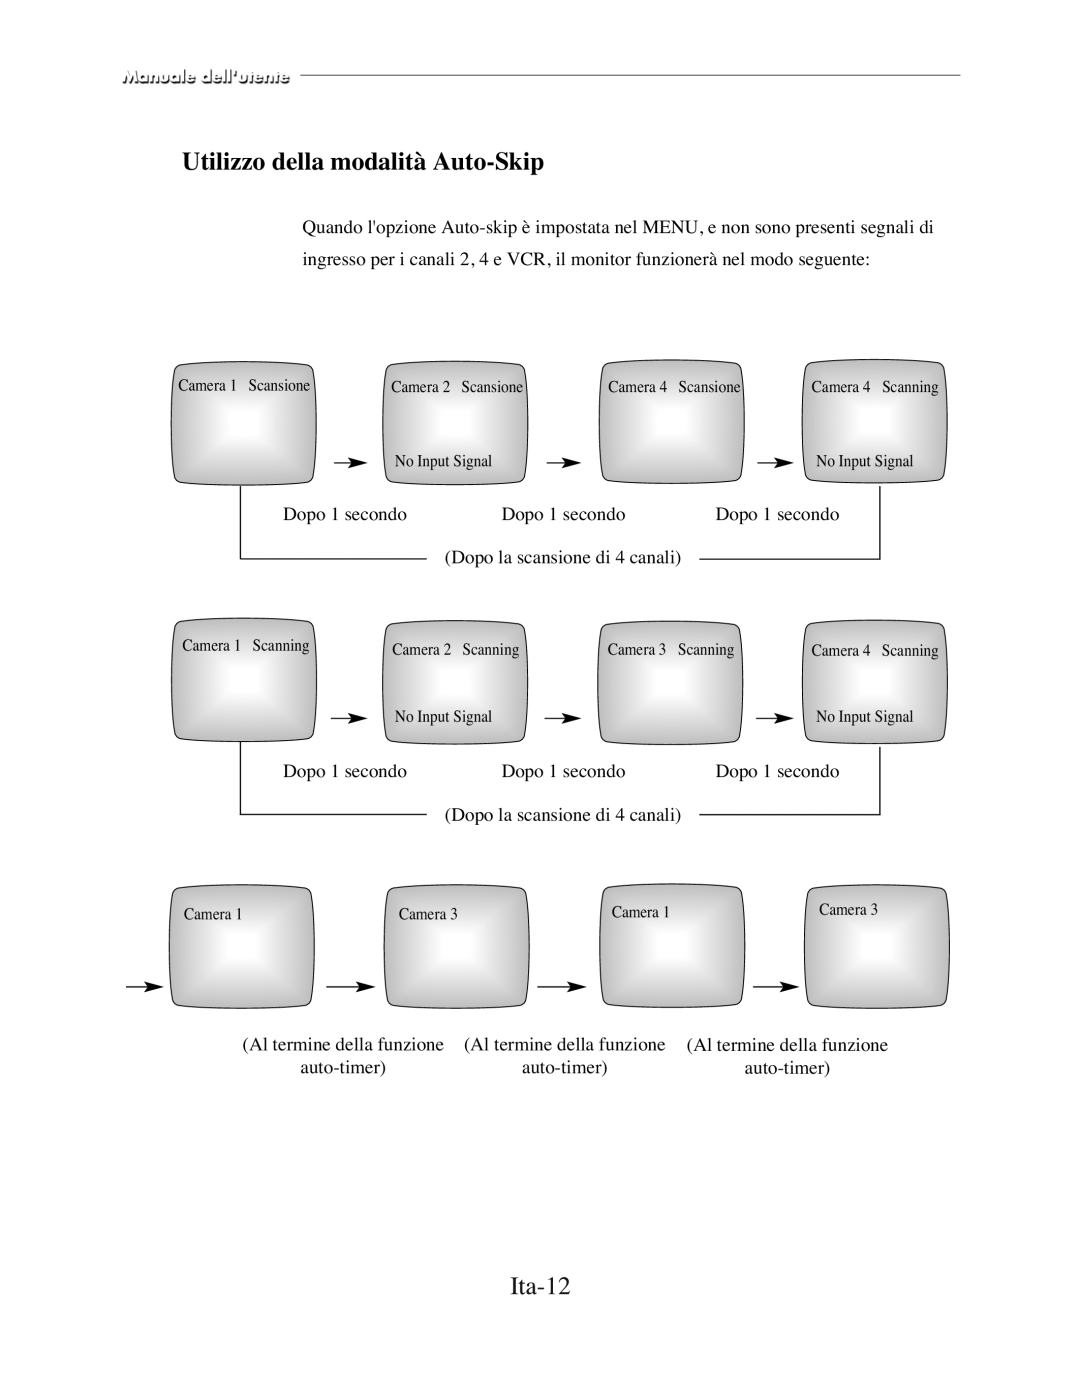 Samsung SMC-150FP, SMC-212FP, SMC-152FPV, SMC-210FPV manual Utilizzo della modalità Auto-Skip, Ita-12 